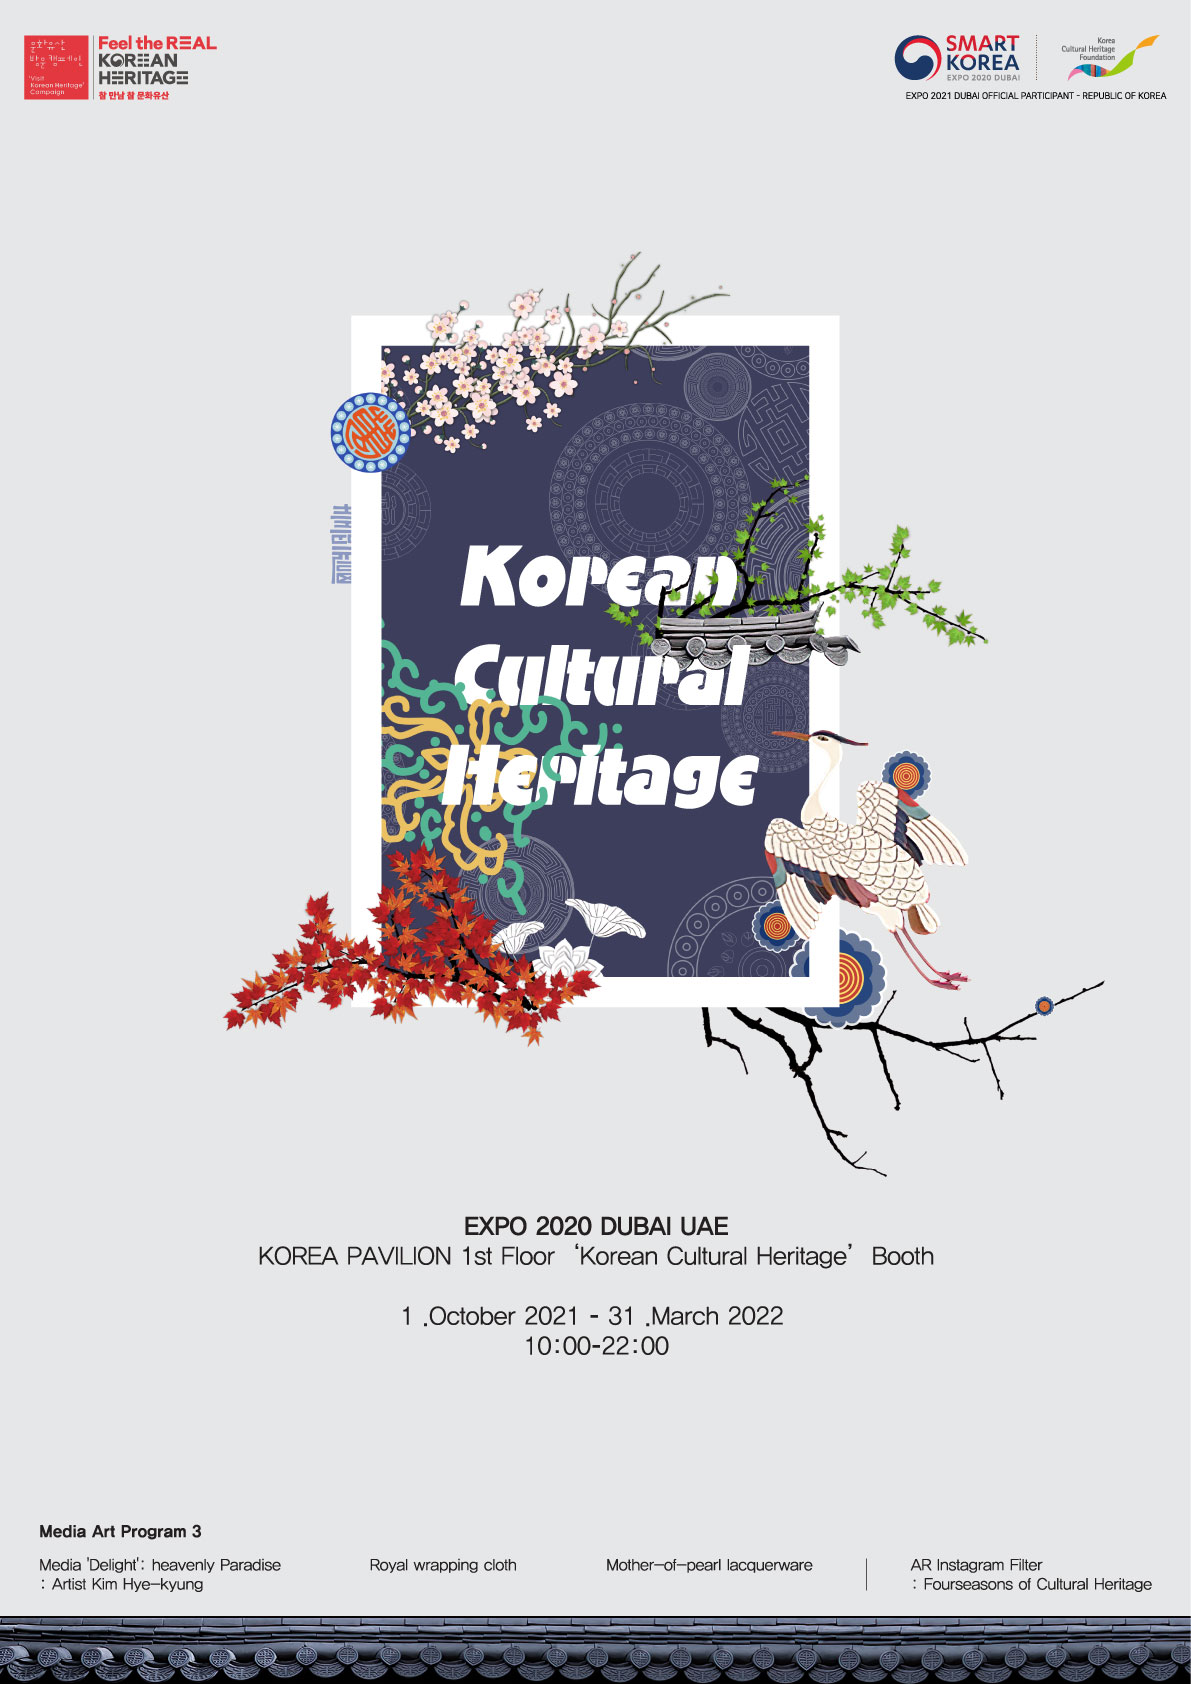 한국의 문화유산관(Korean Cultural Heritage) 문화유산 방문 캠페인(Feel the REAL KOREAN HERITAGE, 참 만남 참 문화유산), SMART KOREA(EXPO 2020 DUBAI), 한국문화재재단(Korea Cultural Heritage Foundation) EXPO 2021 DUBAI OFFICIAL PARTICIPANT - REPUBLIC OF KOREA Media Art Program 3 Media 'Delight': heavenly Paradise: Artist Kim Hye-kyung Royal wrapping cloth Mother-of-pearl lacquerware AR Instagram Filter: Fourseasons of Cultural Heritage (자세한 내용 하단 참조)